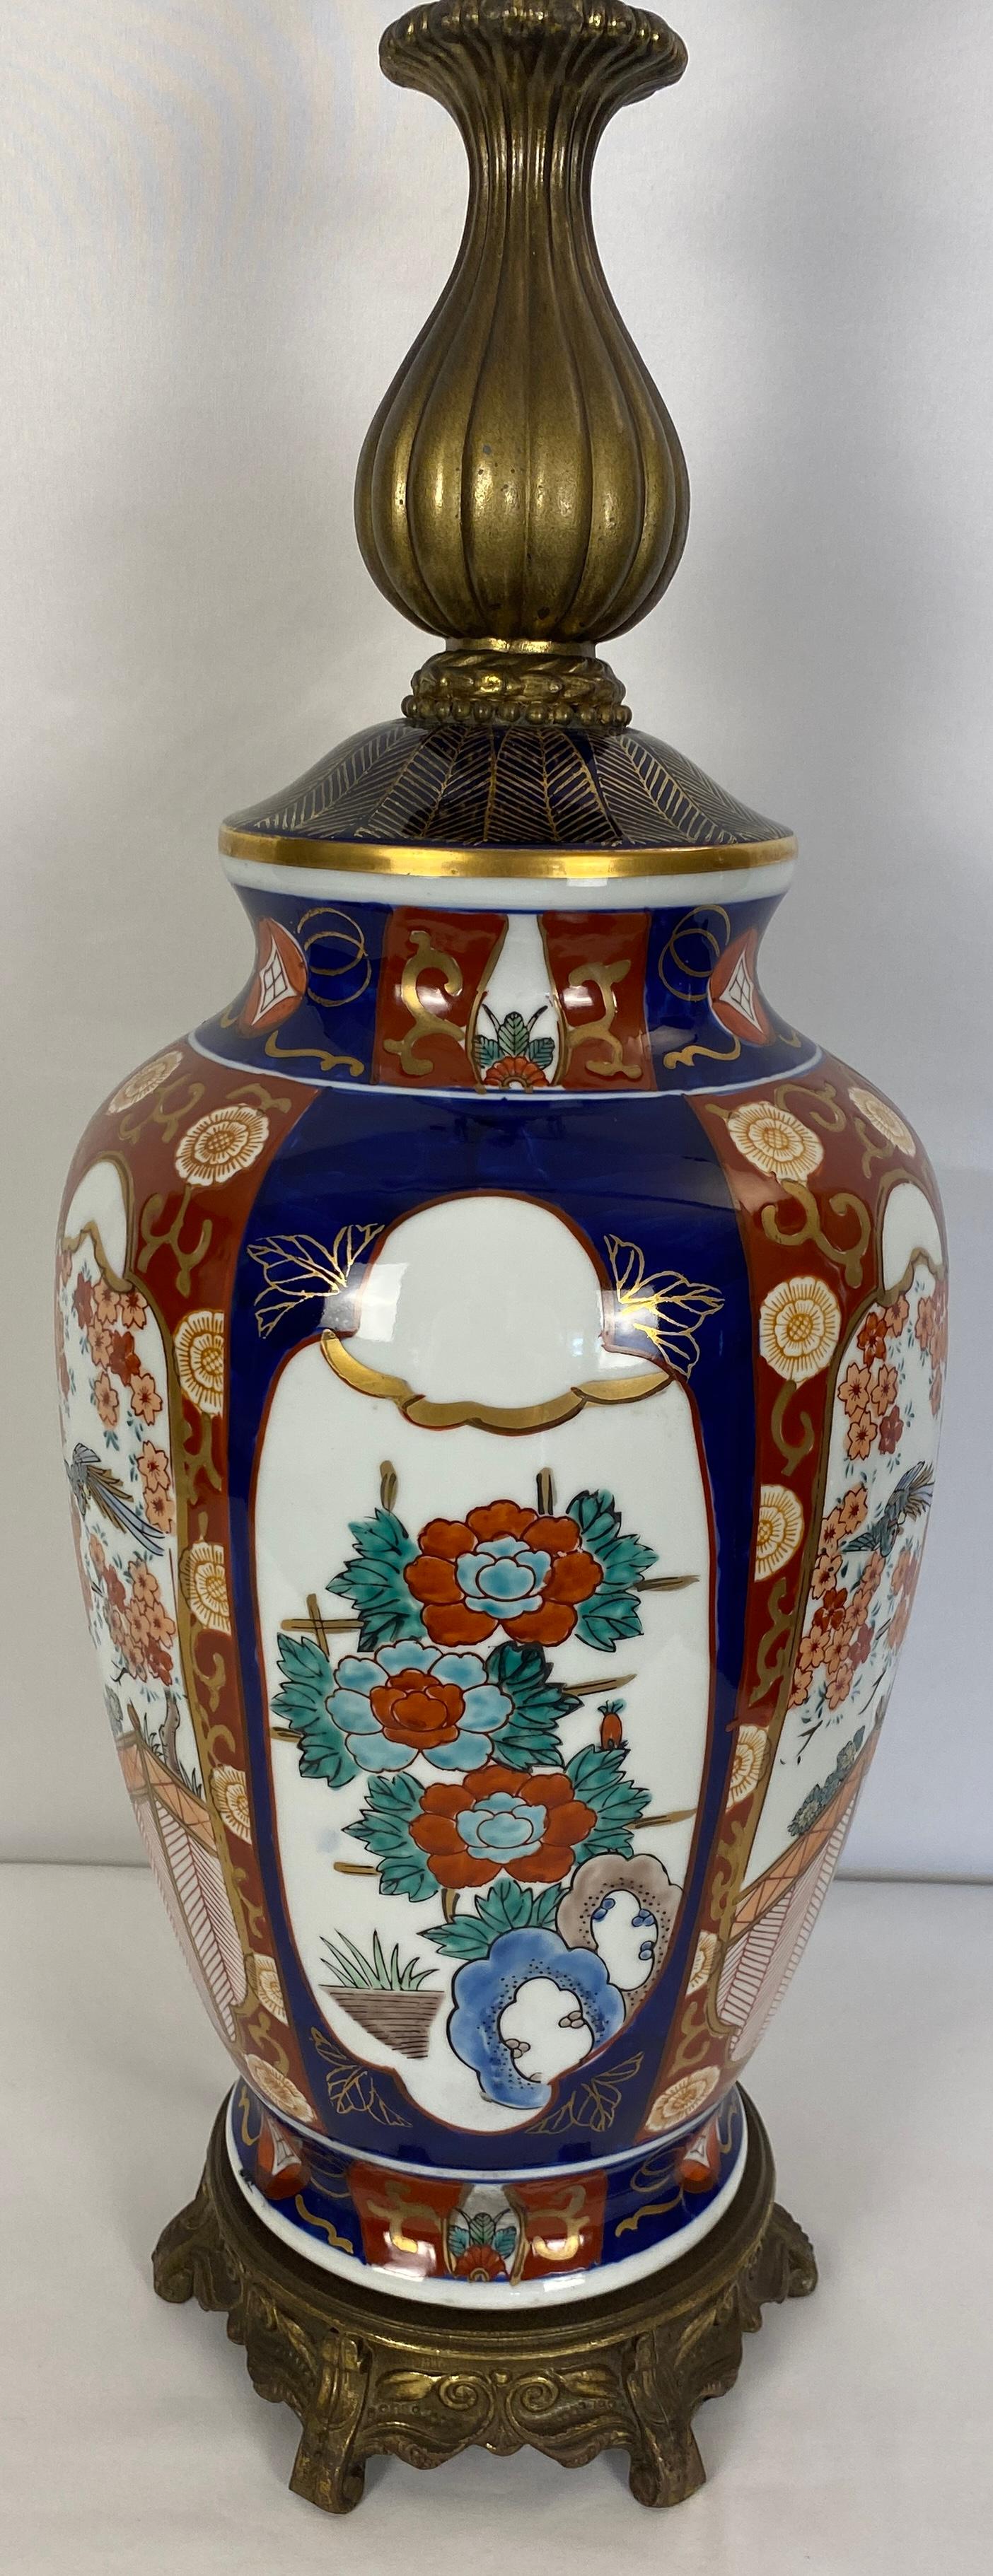 Paire de lampes en porcelaine japonaise de style Imari, décorées d'art figuratif traditionnel, de fleurs et de pagodes dans les tons rose et vert sur fond blanc, dans des bordures décorées, 

Fabriqués par la société Honi Chilo au cours de l'ère